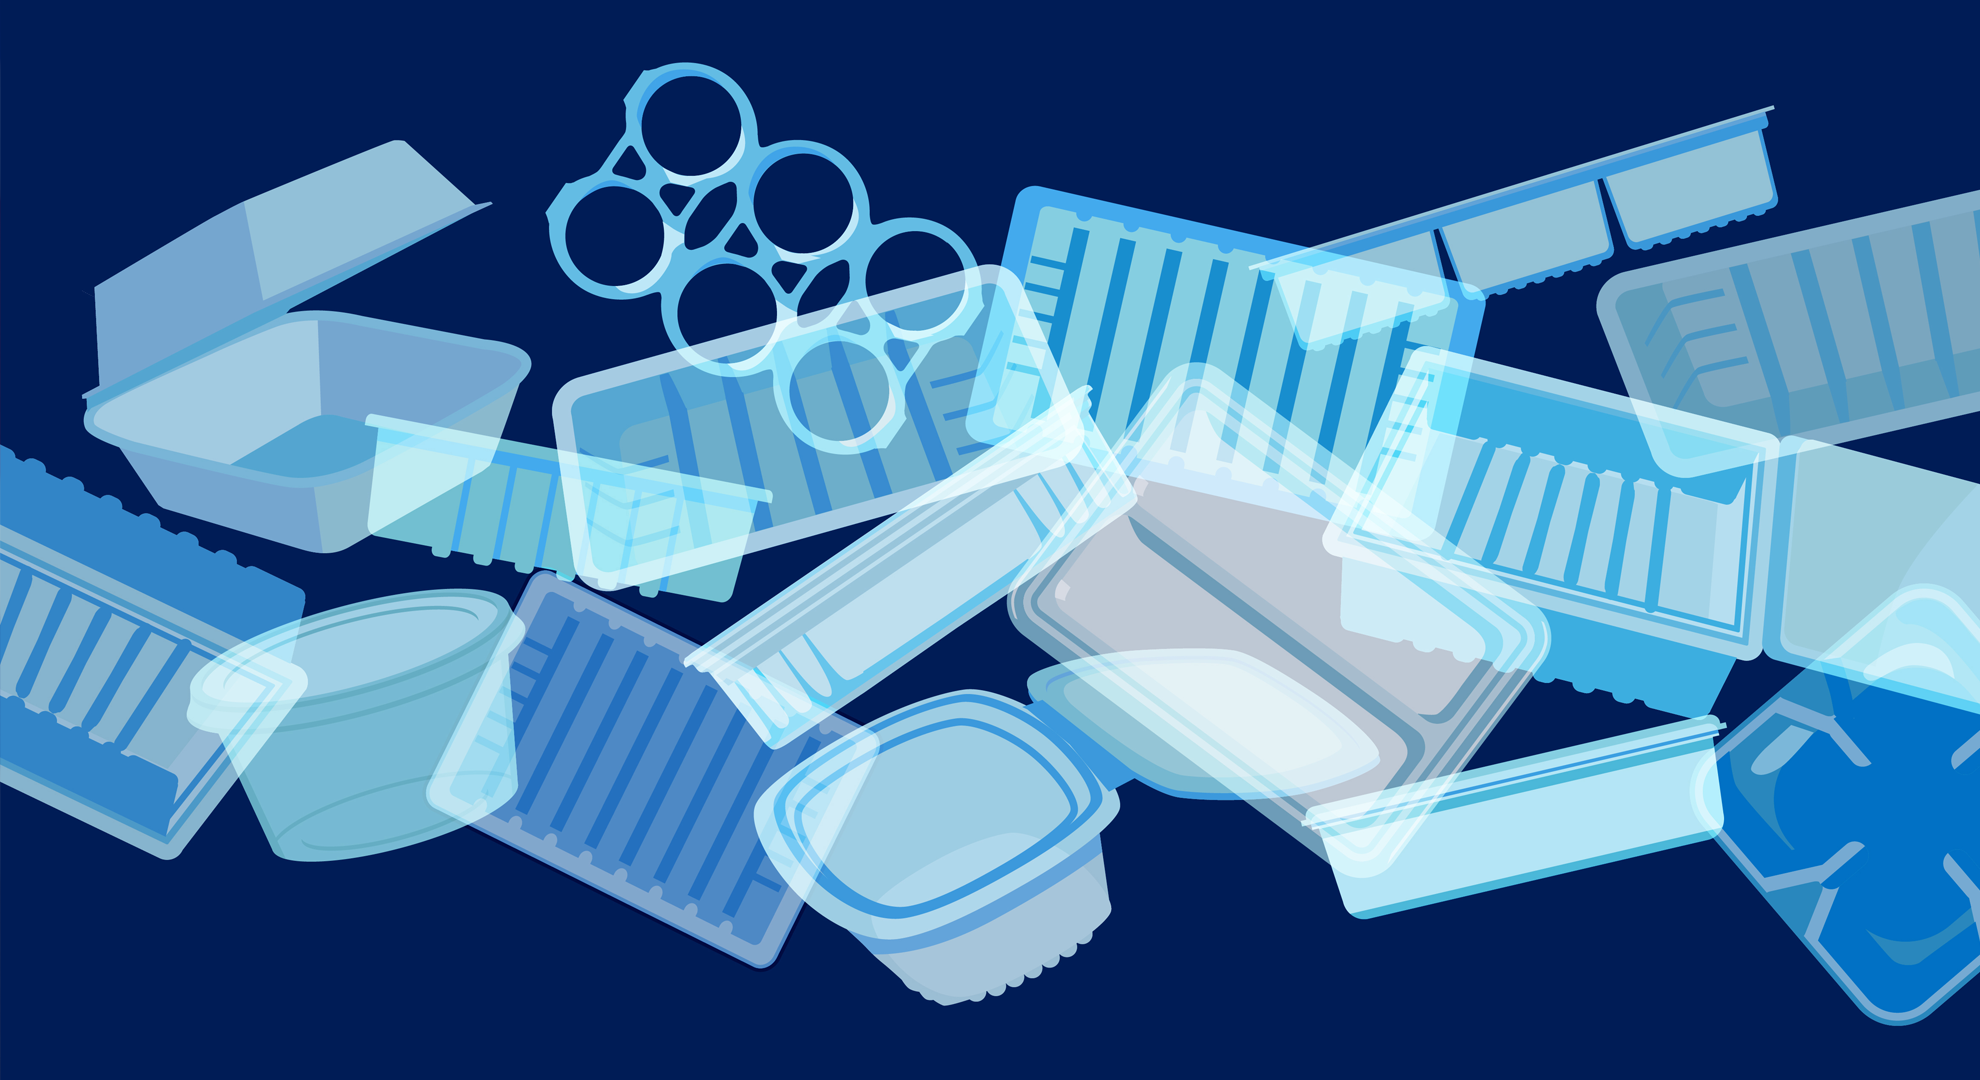 Illustration of single use plastic items